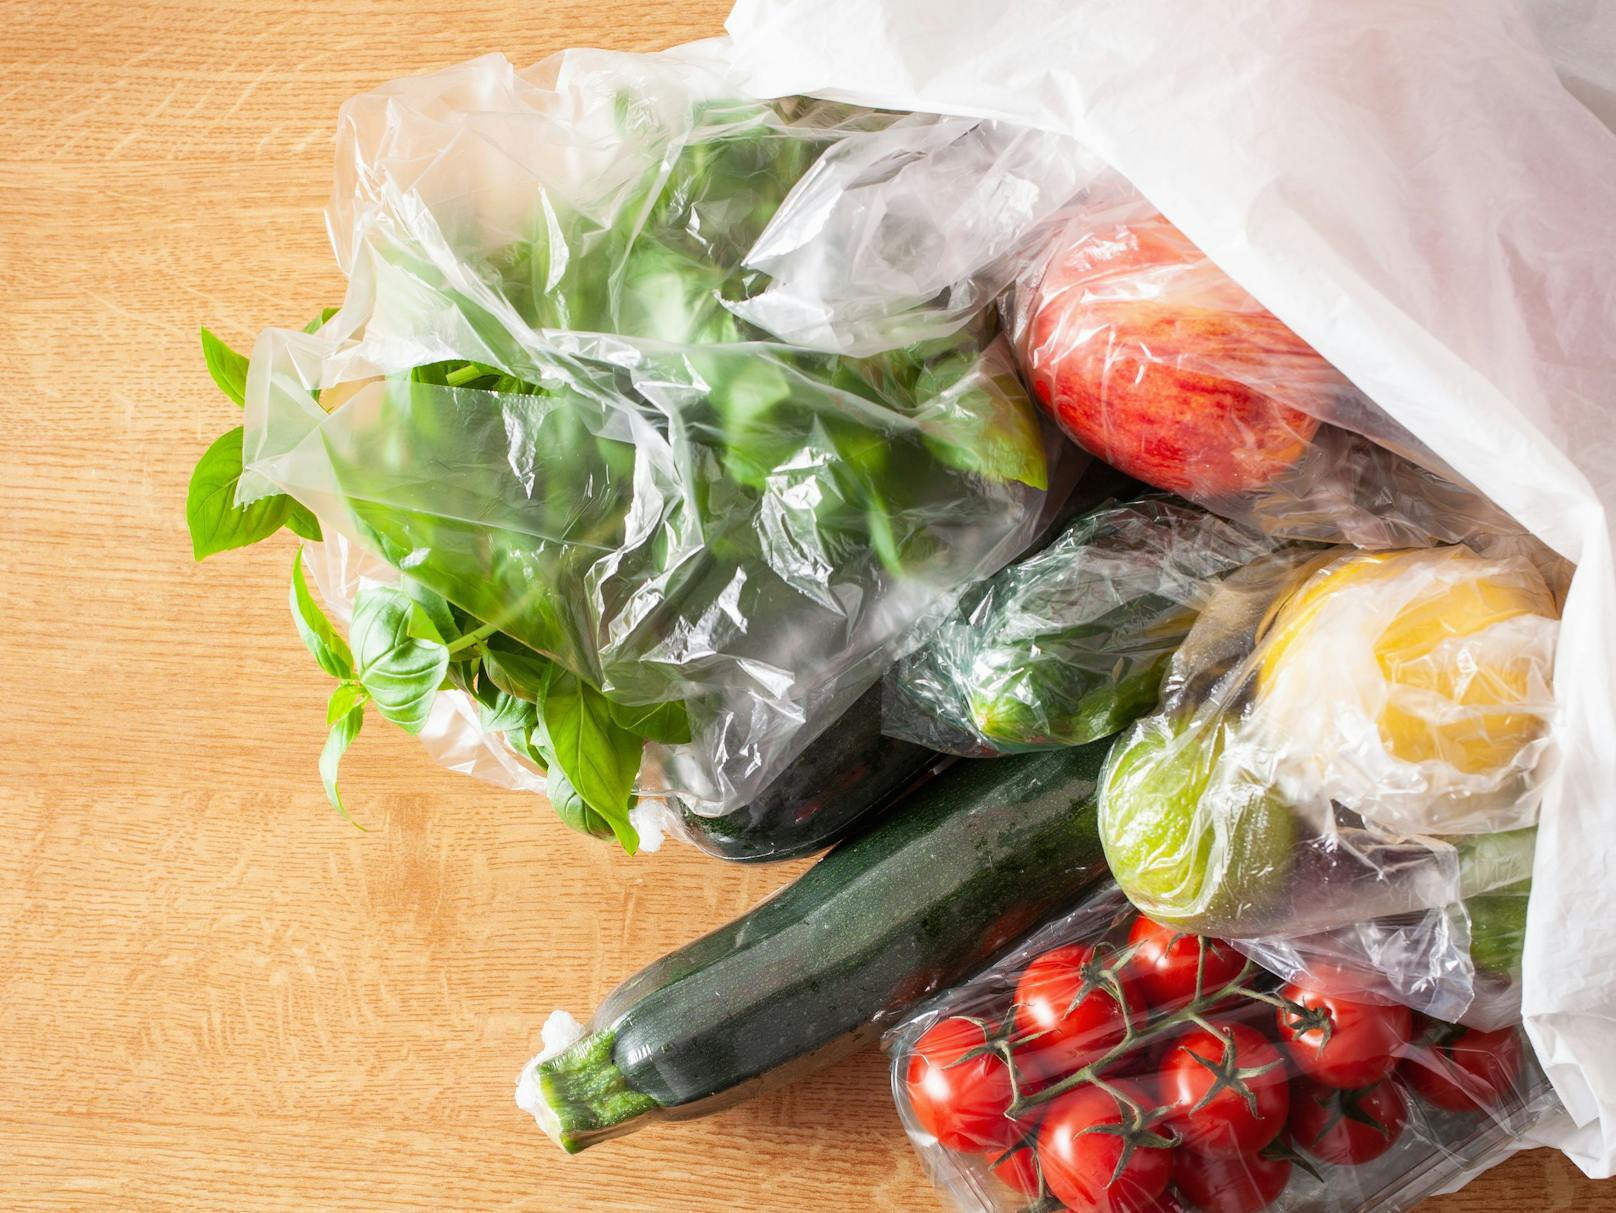 Ab 2022 dürfen in Frankreich viele Obst- und Gemüsesorten (z.B. Gurken oder Lauch) nur noch ohne Plastikverpackungen verkauft werden.